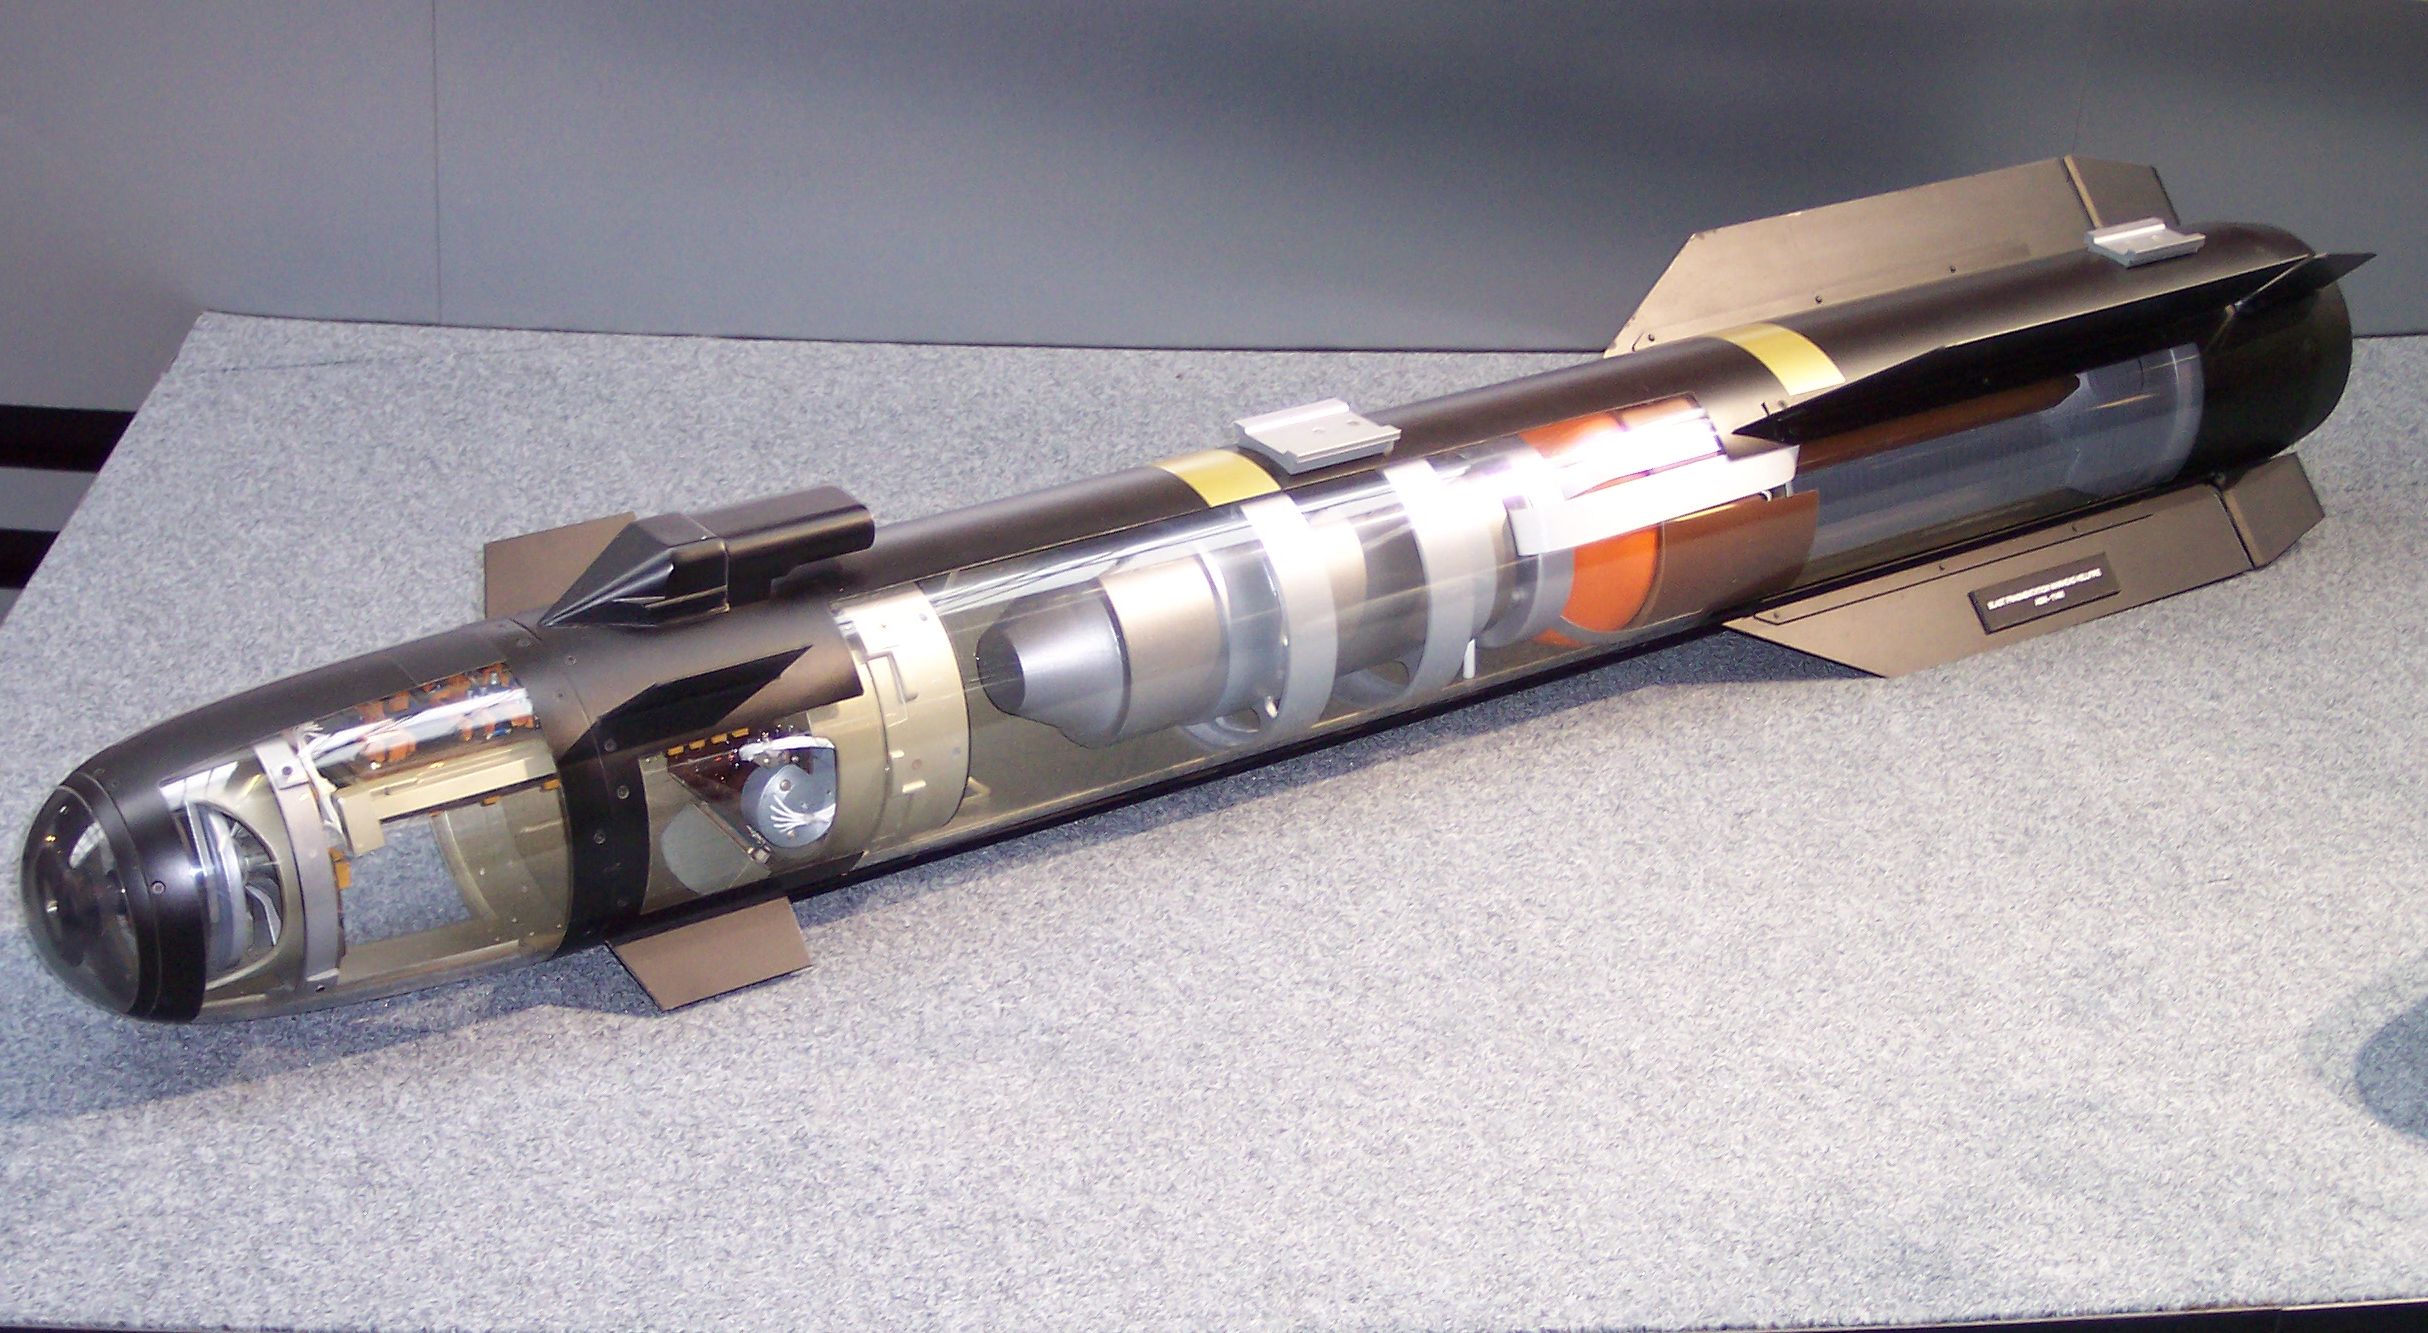 شاهد بالصور النسخة الإيرانية لصاروخ هيلفاير الأمريكي